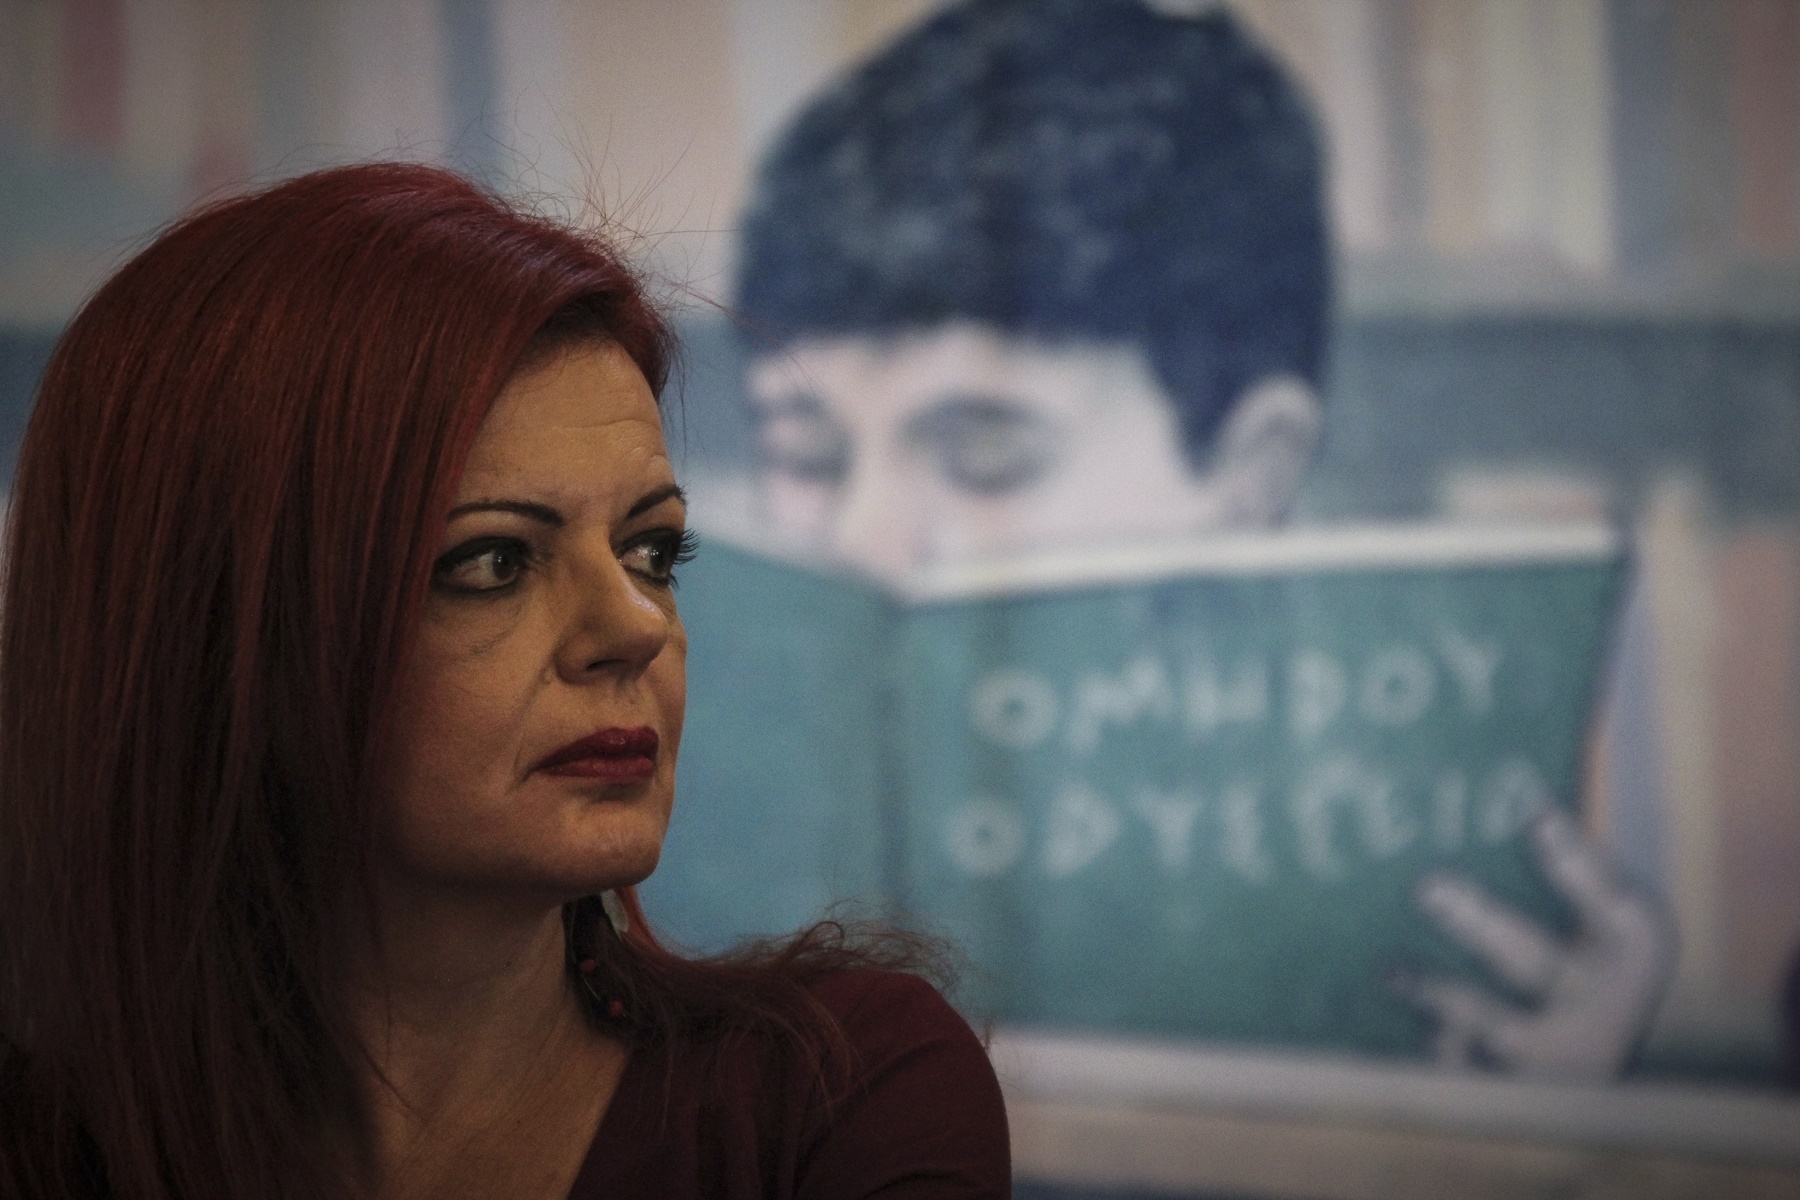 “Τούρκοι Δυτικής Θράκης”: Τι συνέβη με τη Μαρία Γιαννακάκη και την Ομάδα Αλήθειας